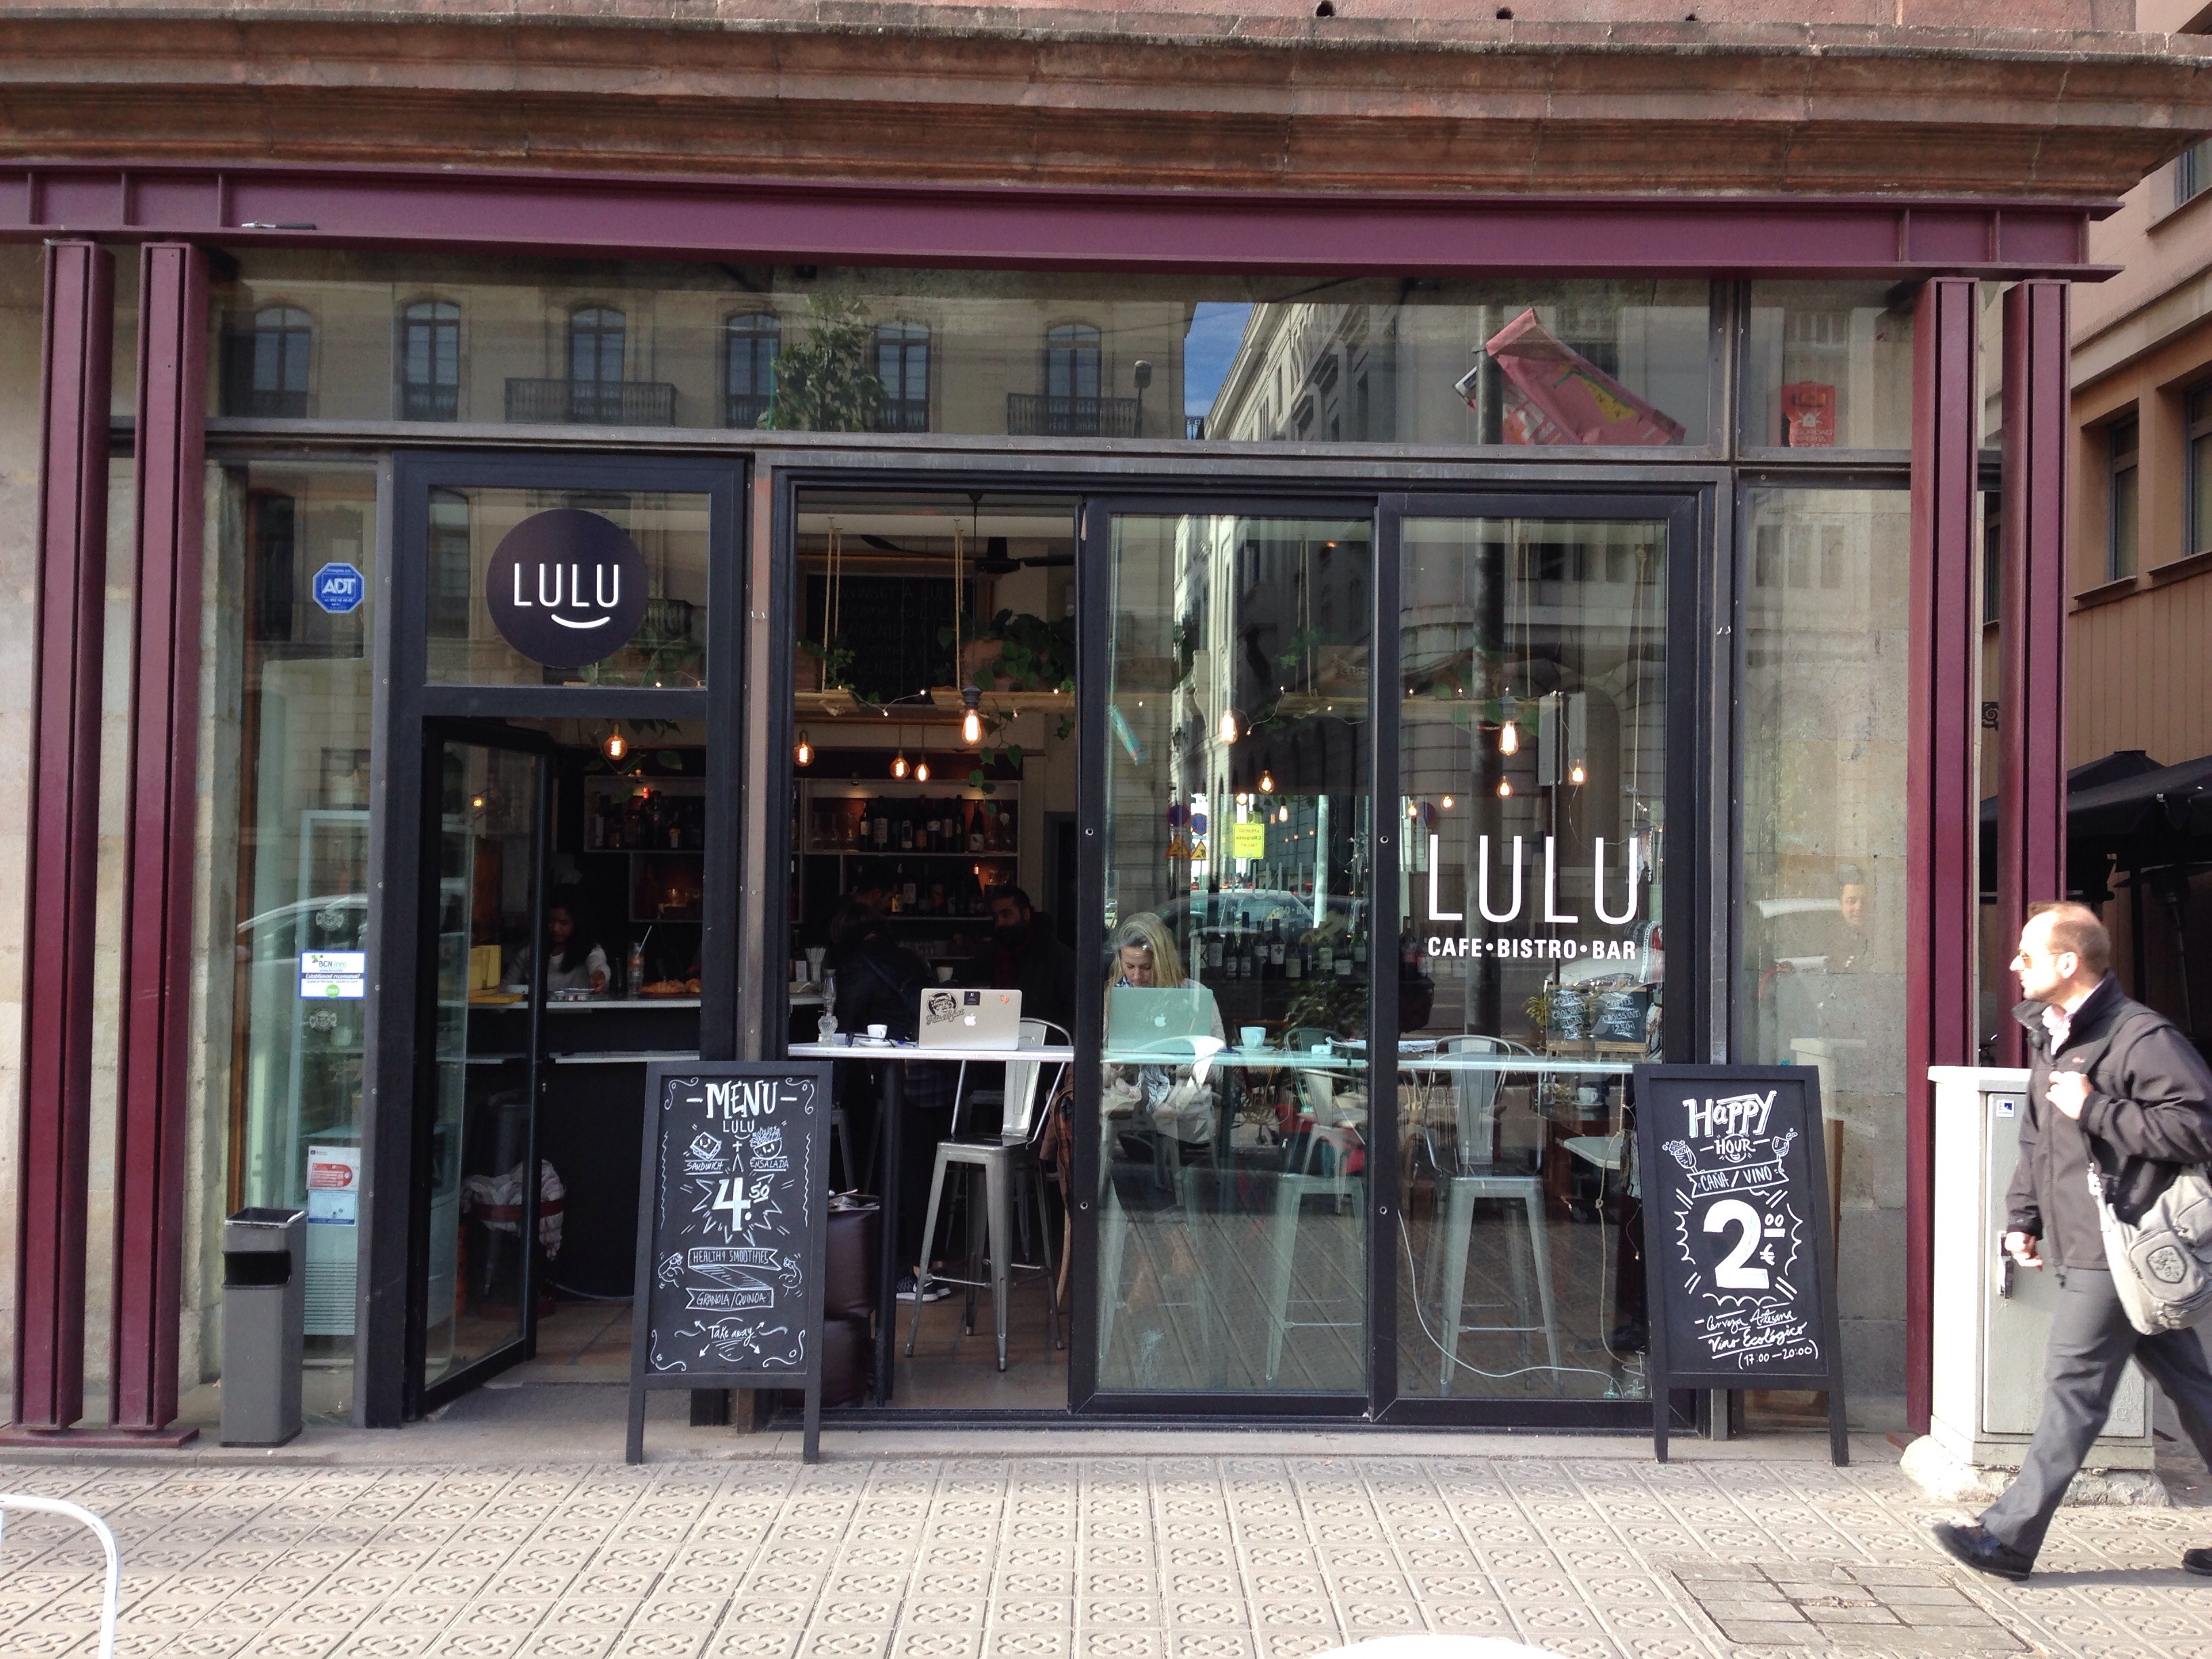  Cafe  Lulu  in Barcelona